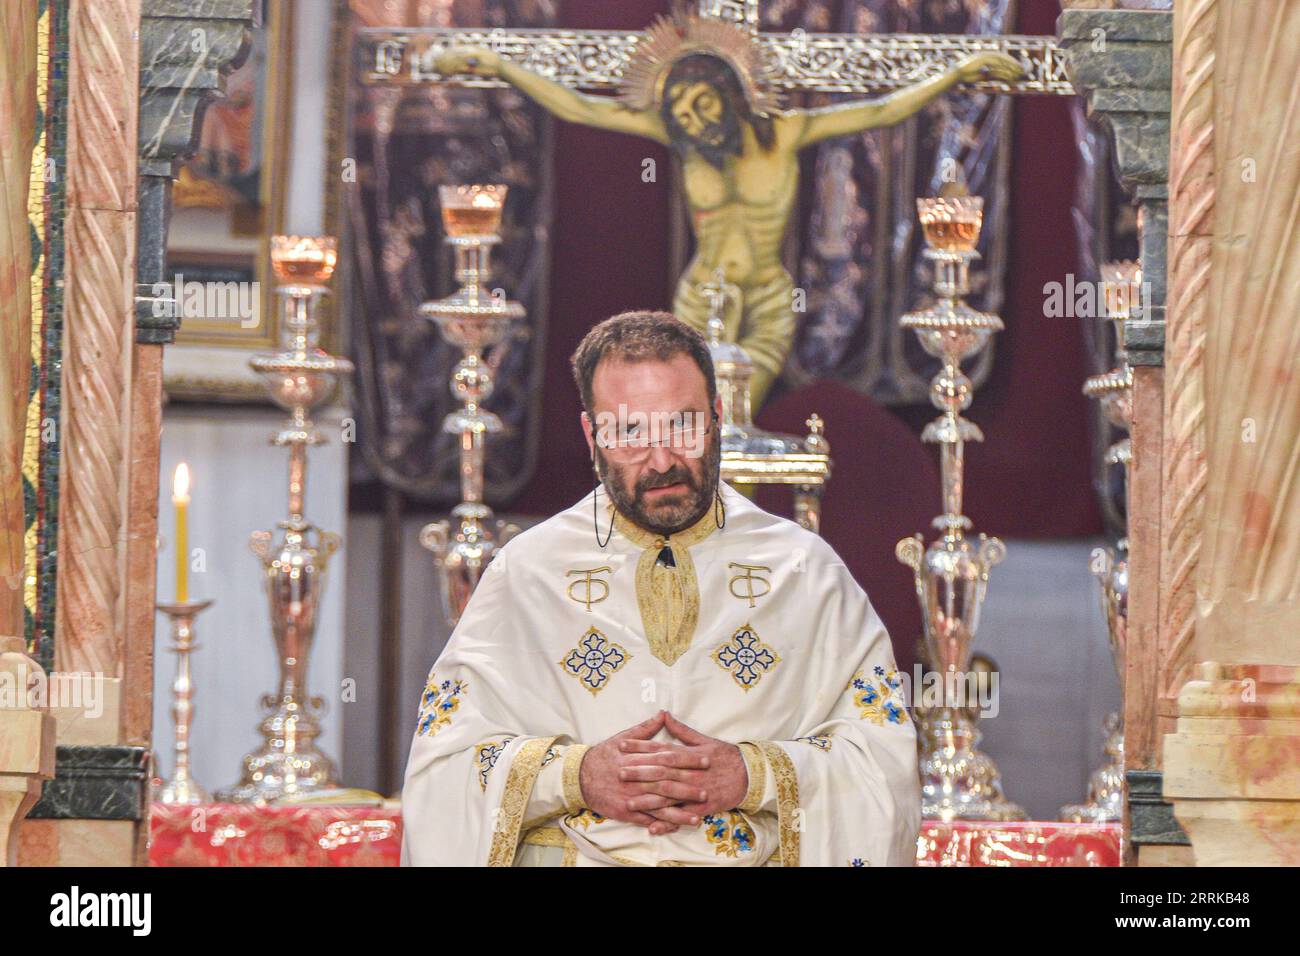 Un uomo di mezza età che indossa occhiali è seduto su un altare in un ambiente religioso, con crocifissi sullo sfondo Foto Stock